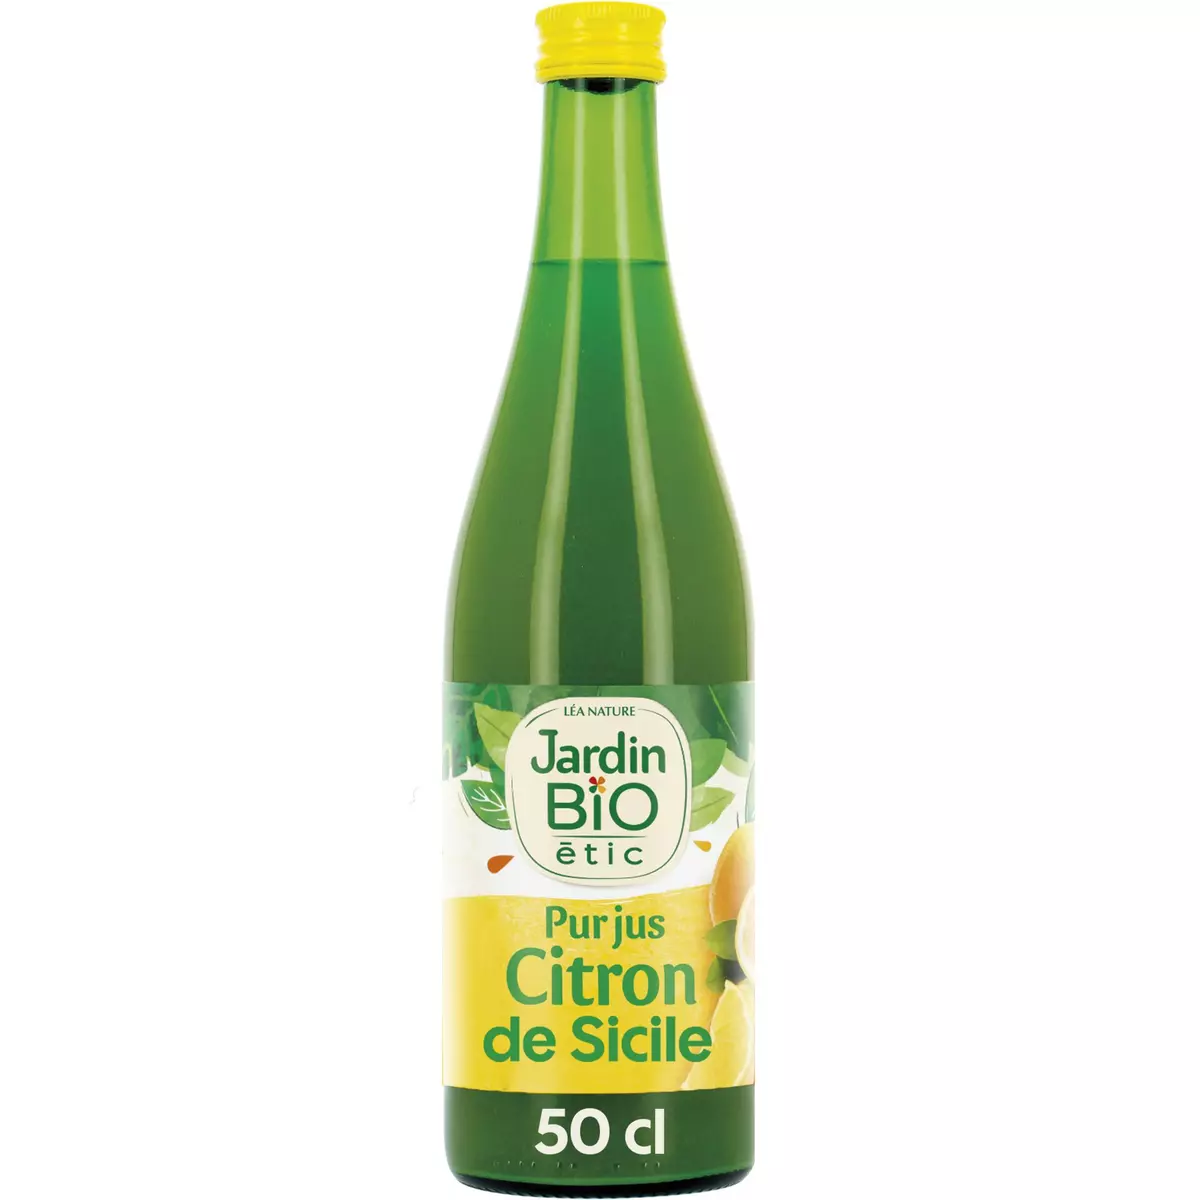 JARDIN BIO ETIC Pur jus de citron origine Sicile 50cl